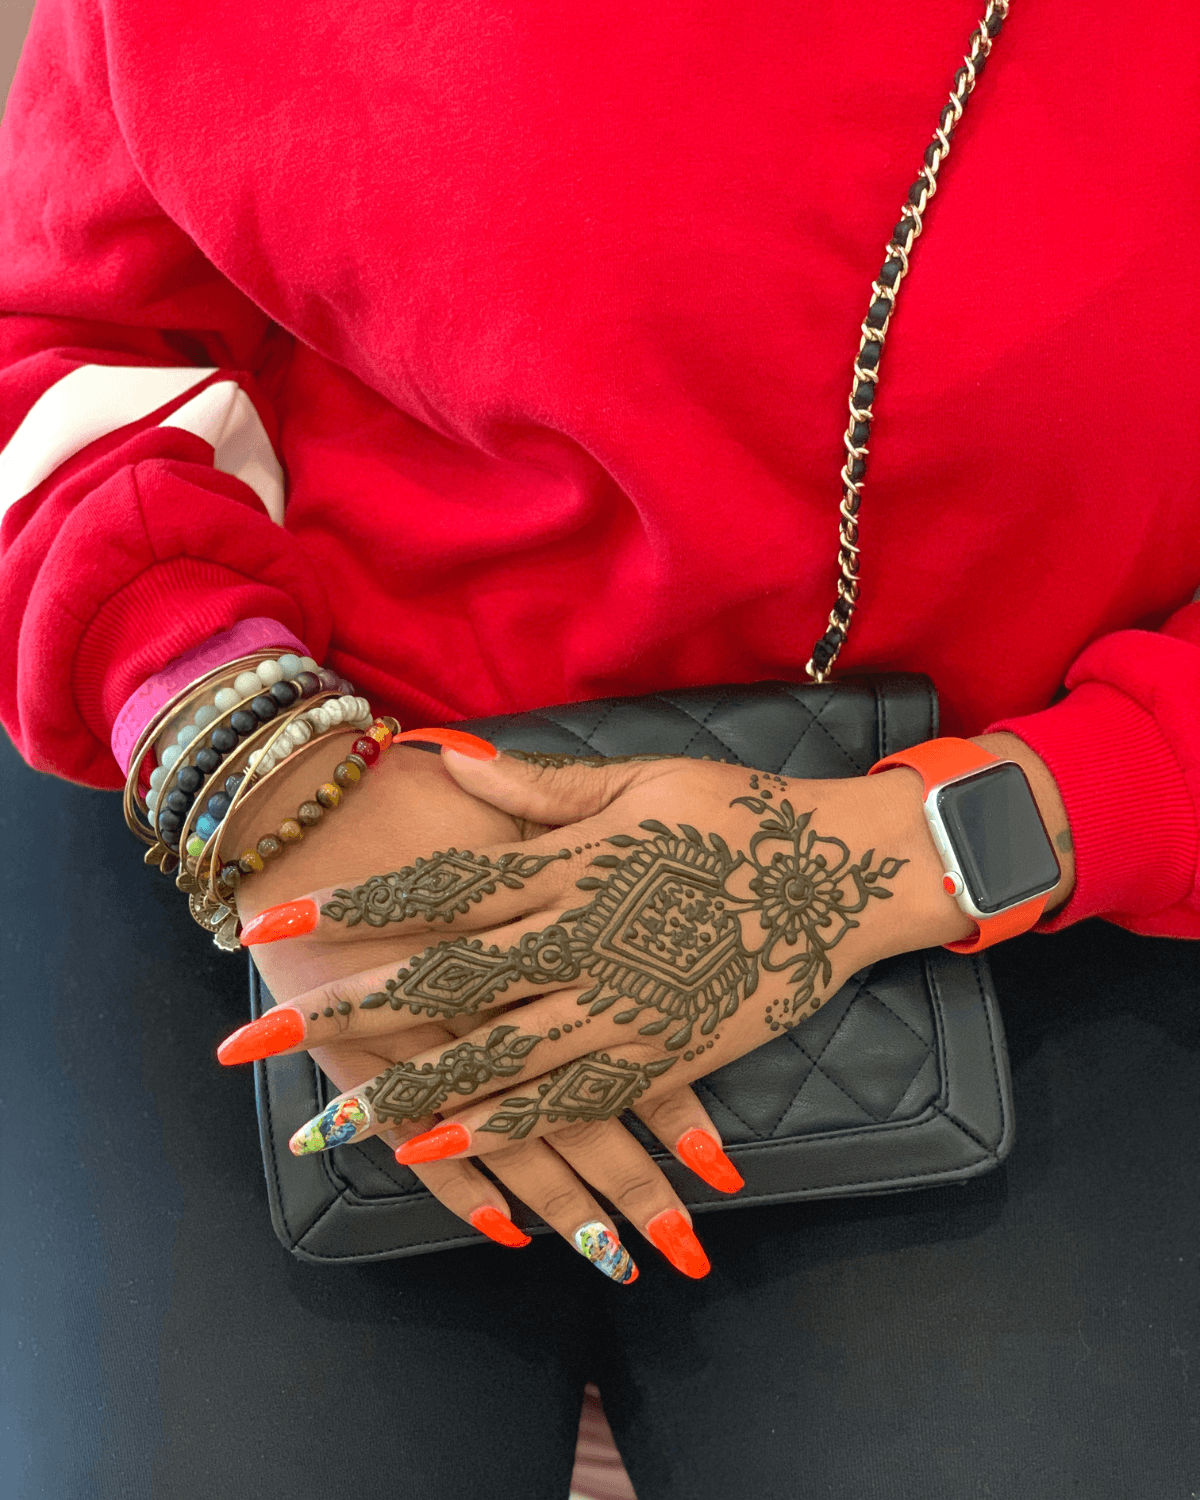 Henna Body Art Kit and eCourse – Henna Sooq